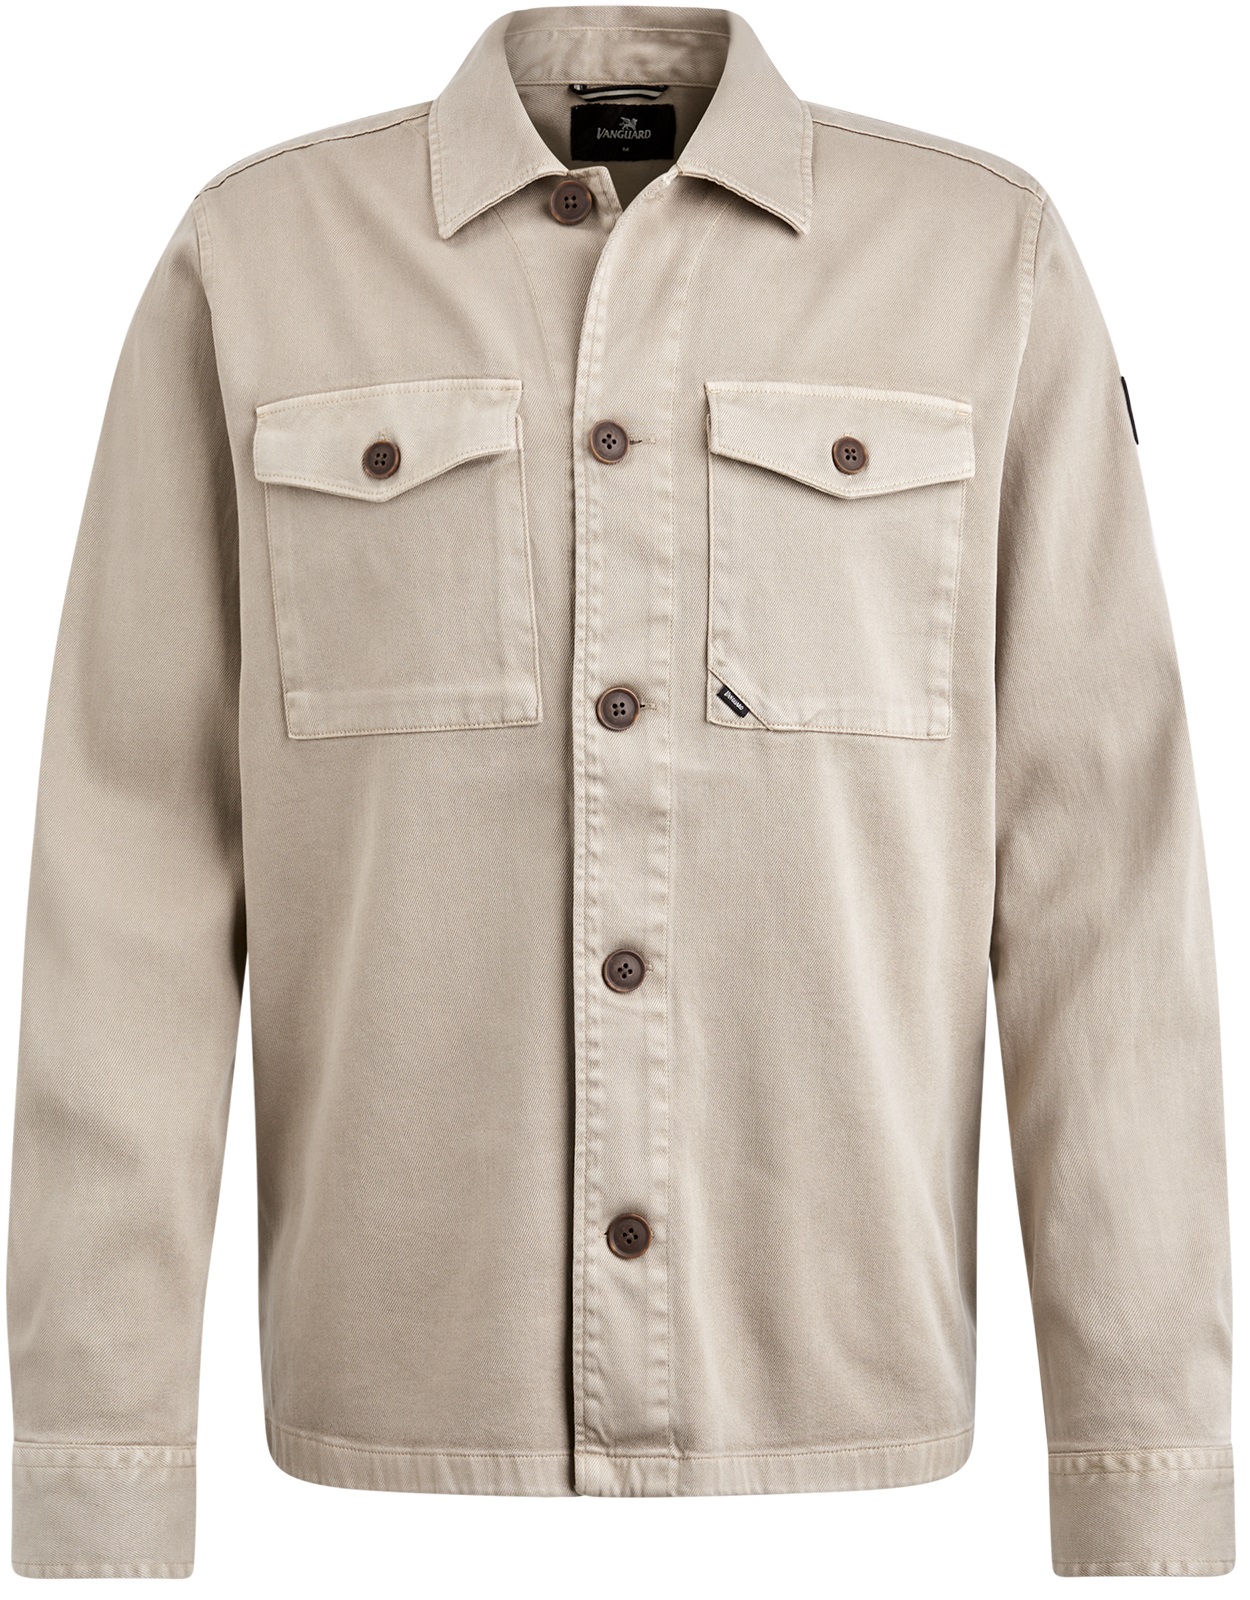 Vanguard Long sleeve shirt gold topaz s VSI2402209-8265